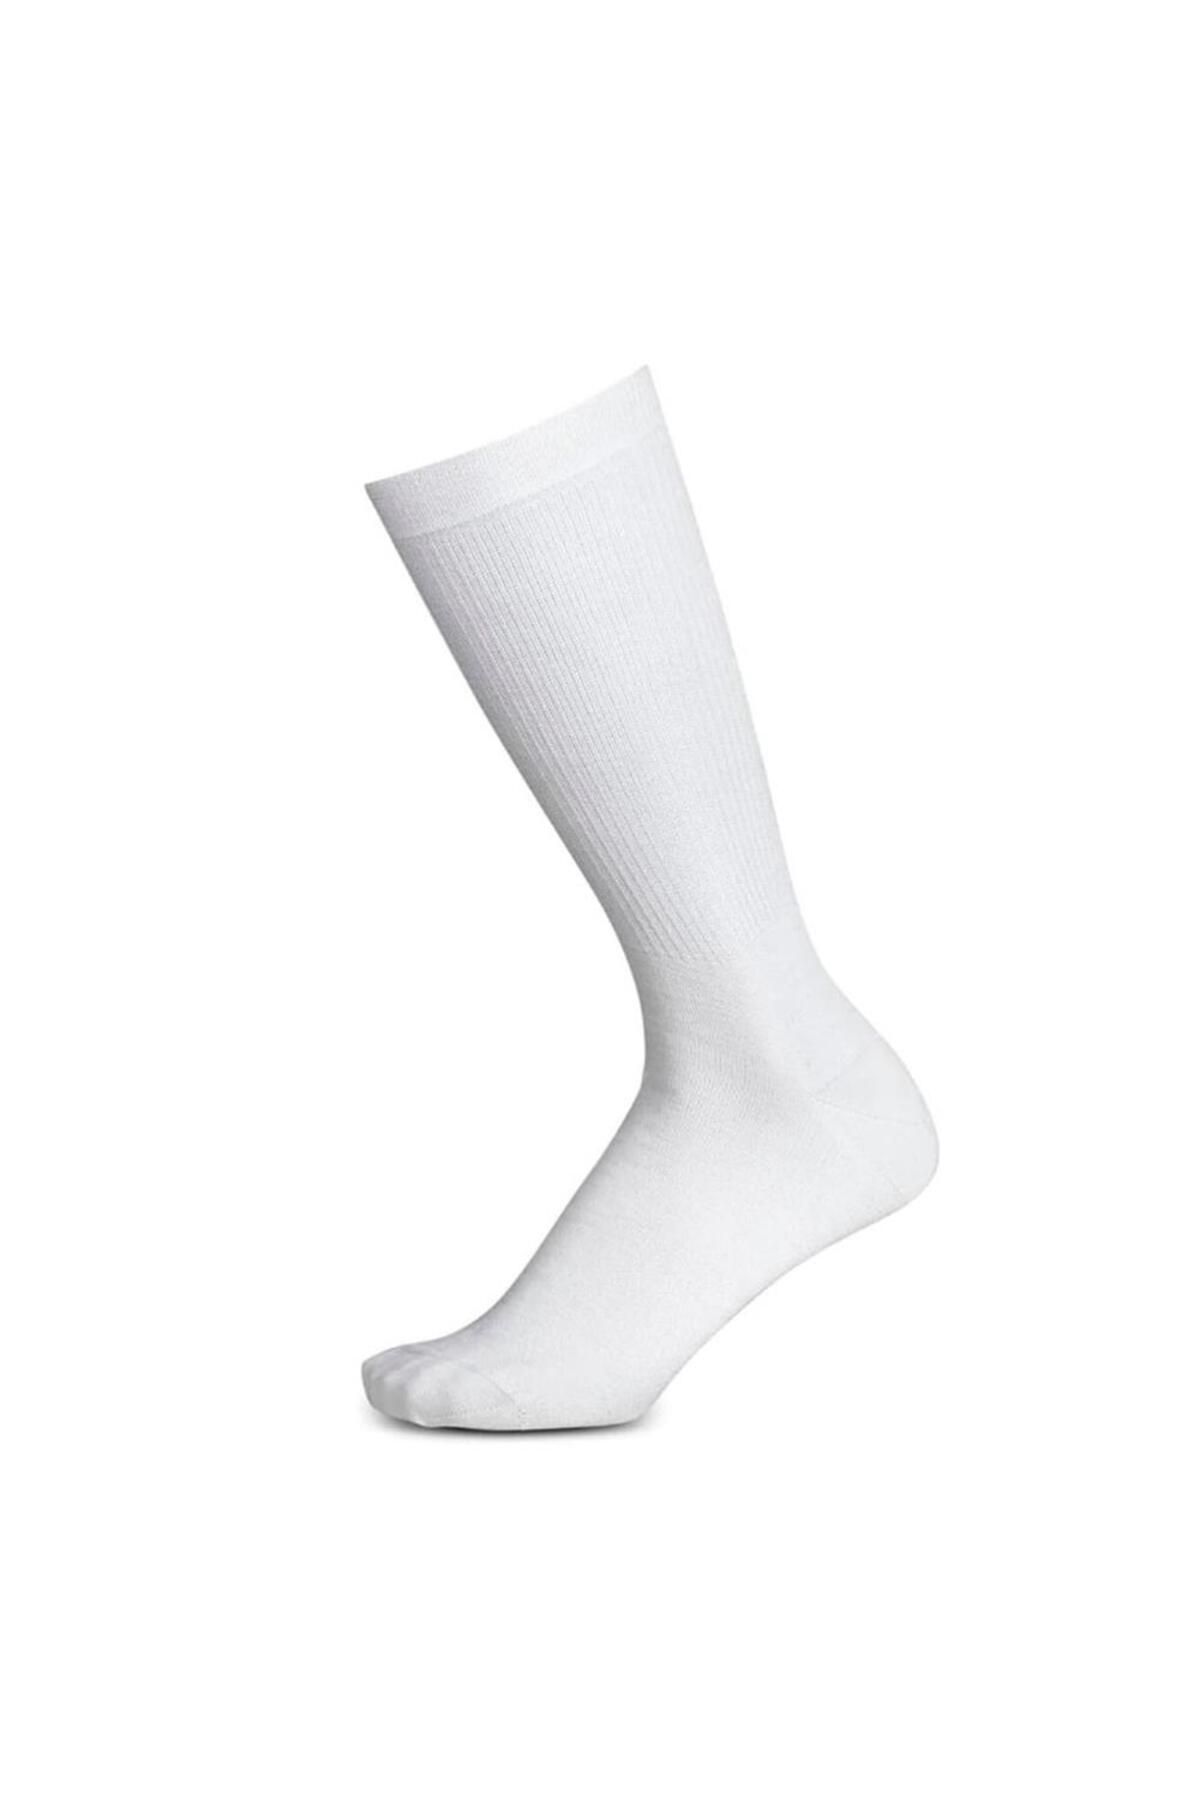 Sparco Rw-4 Çorap Fia Onaylı Beyaz 44/45 Numara